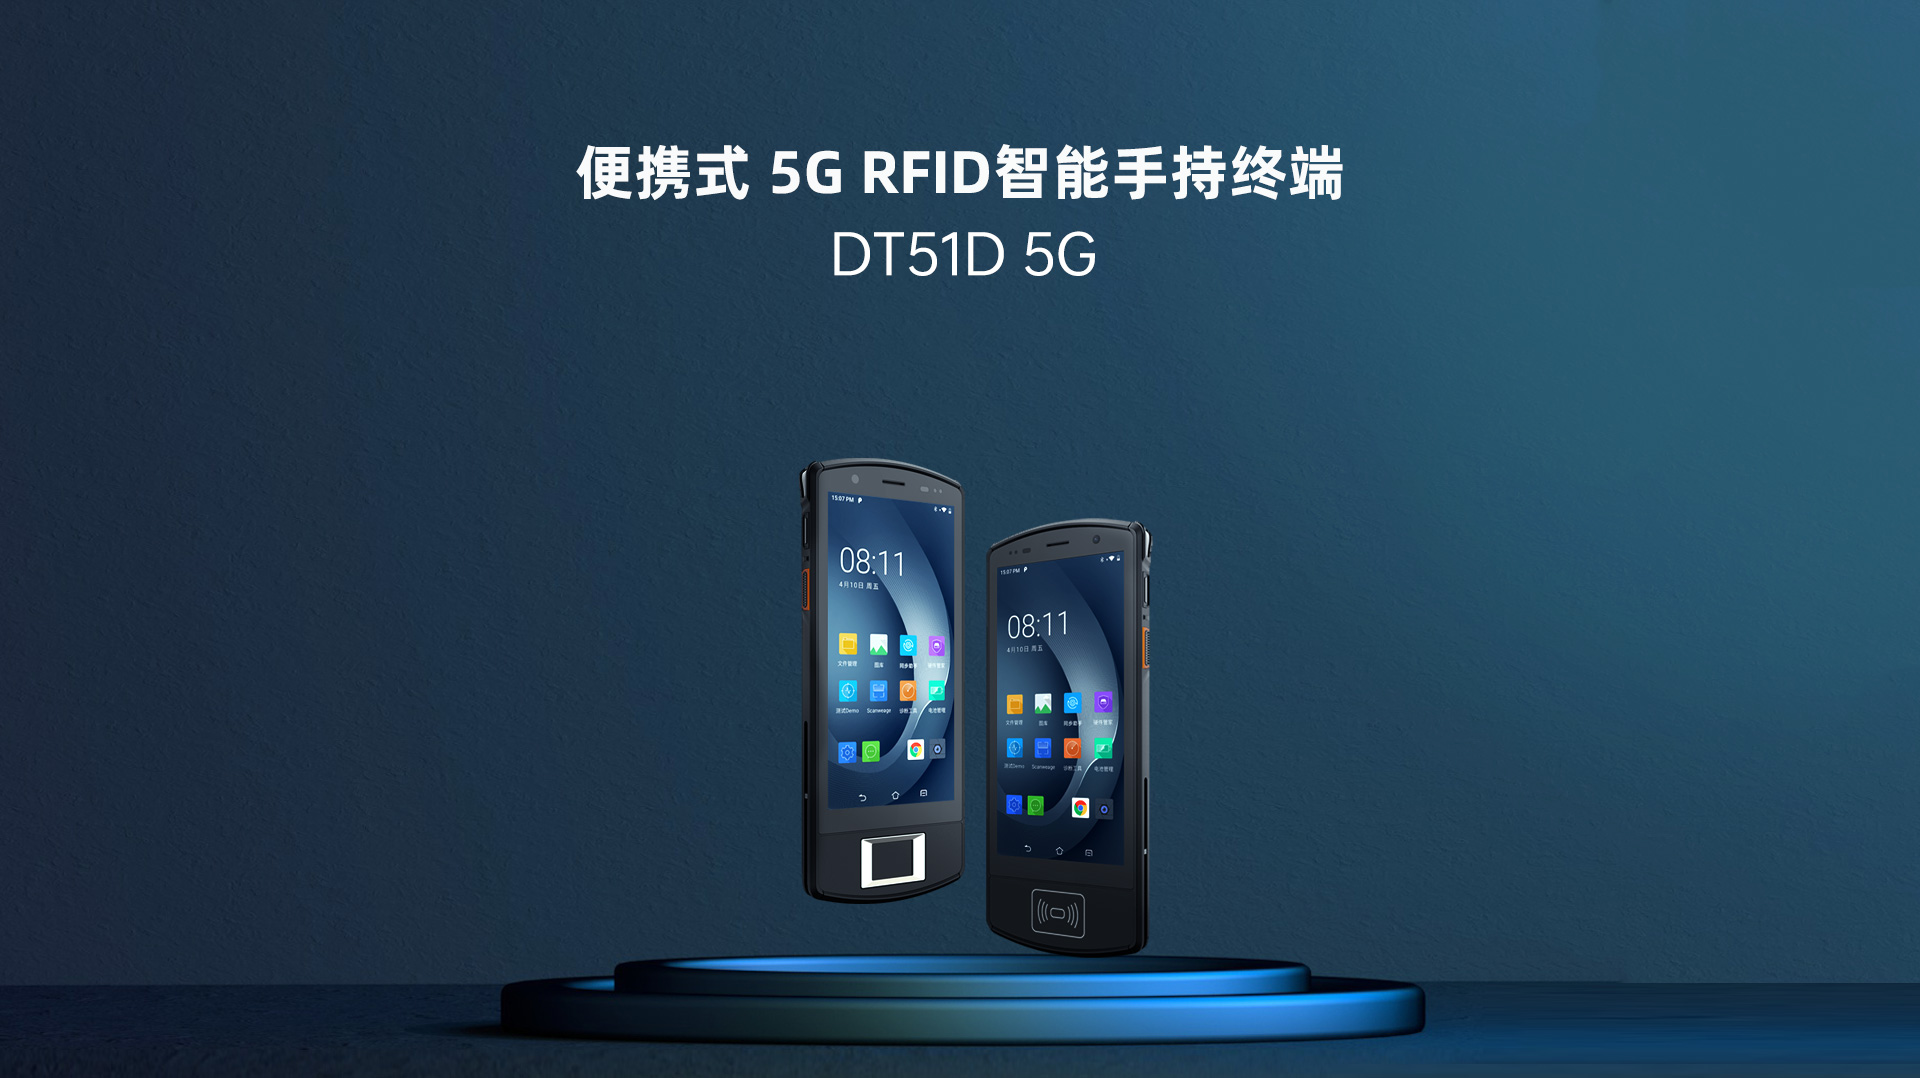 优博讯便携式 5G RFID智能手持终端DT51D 5G  